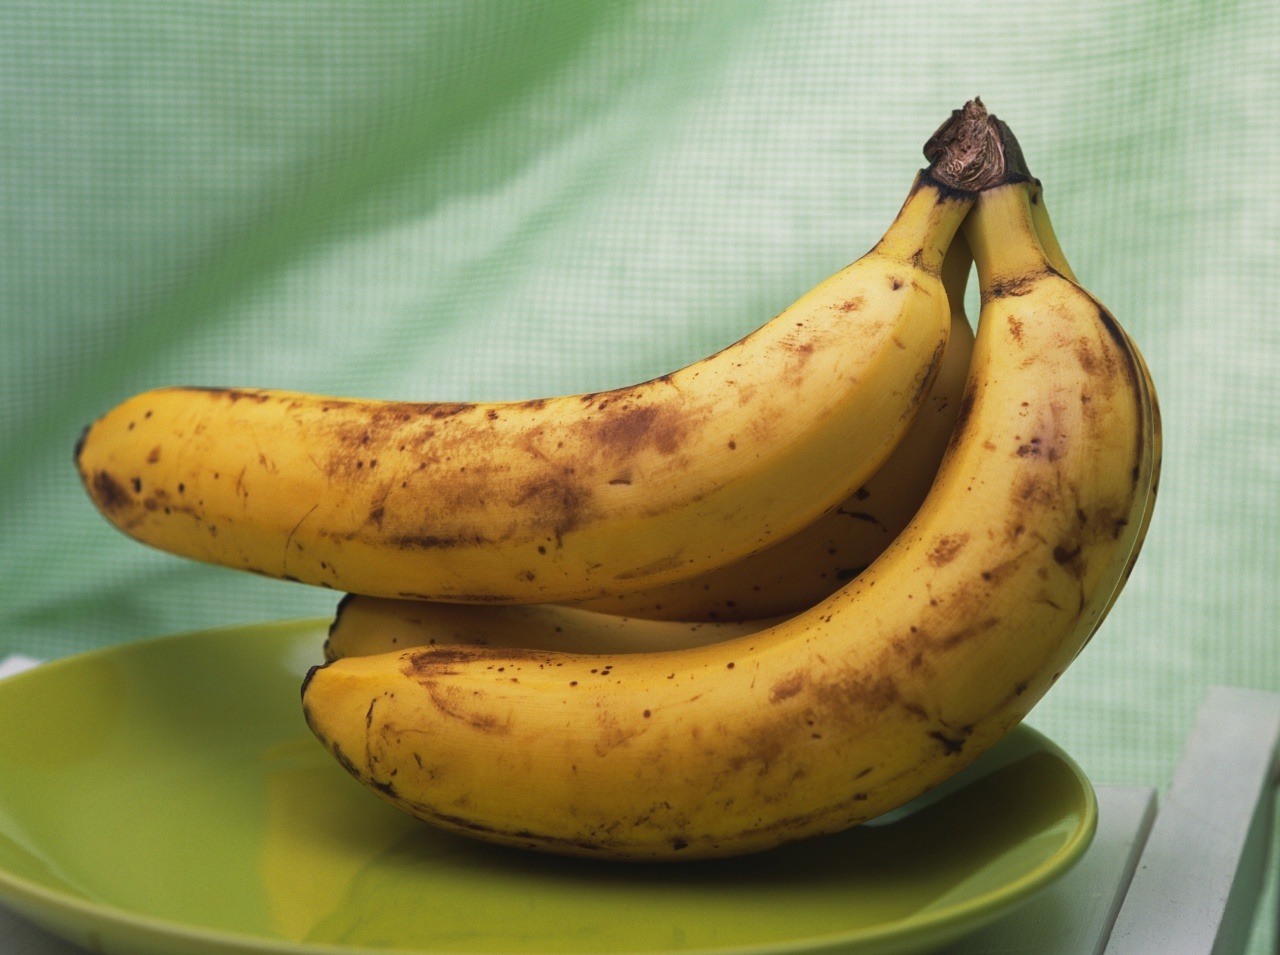 Banány jednoznačne nedávajte do chladničky! Chuť to nezmení, vábne však nevyzerajú. 